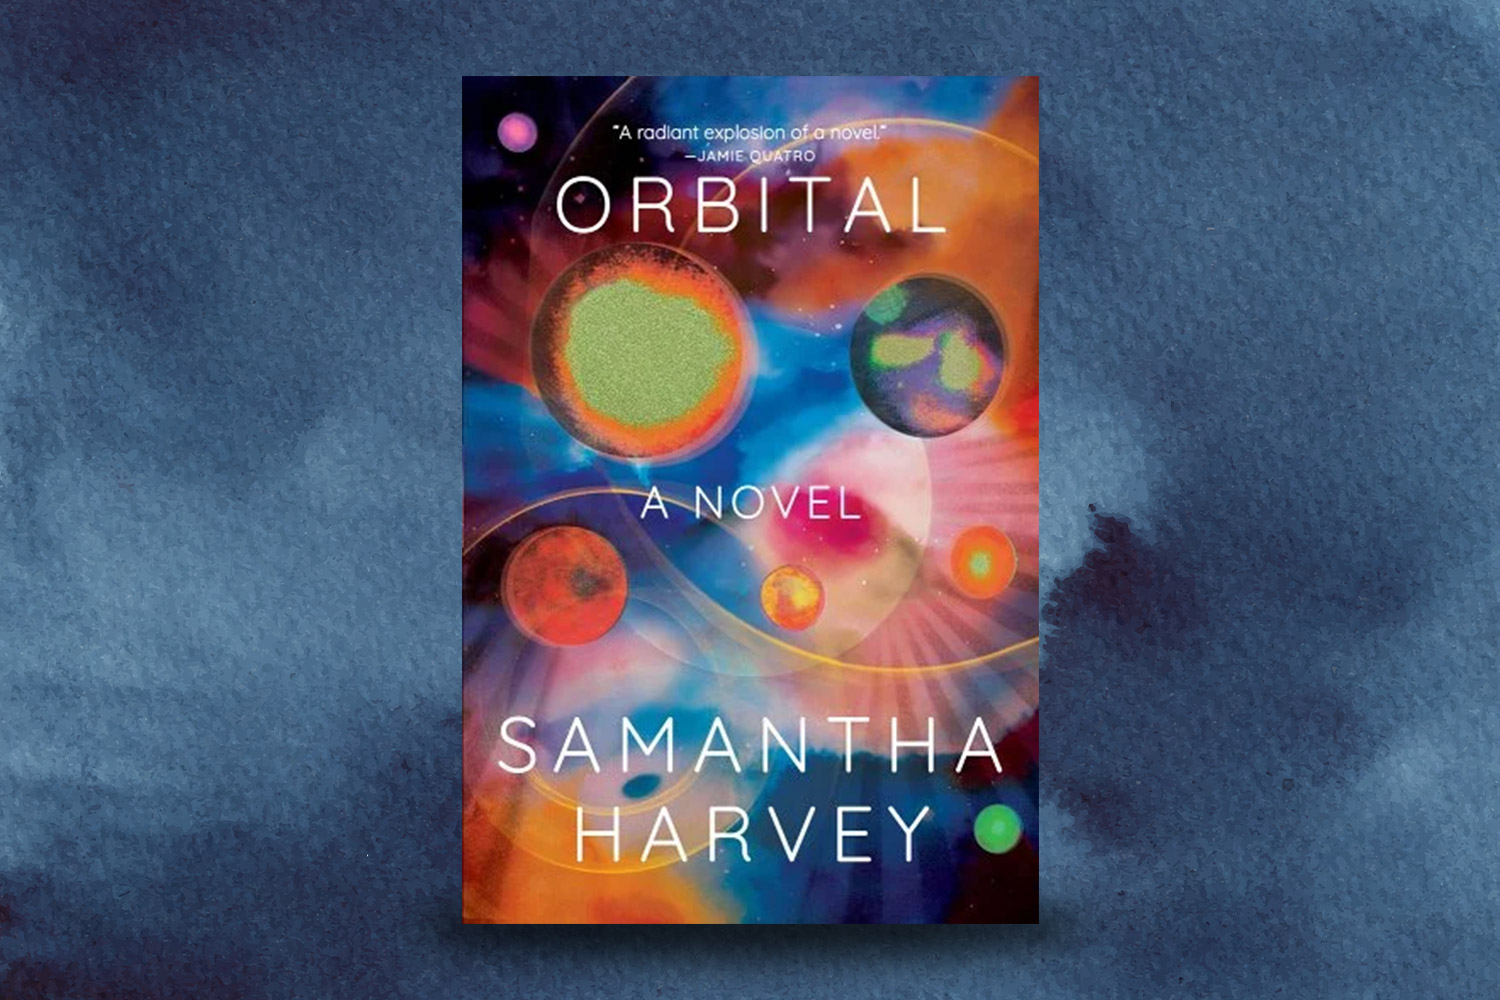 "Orbital" cover